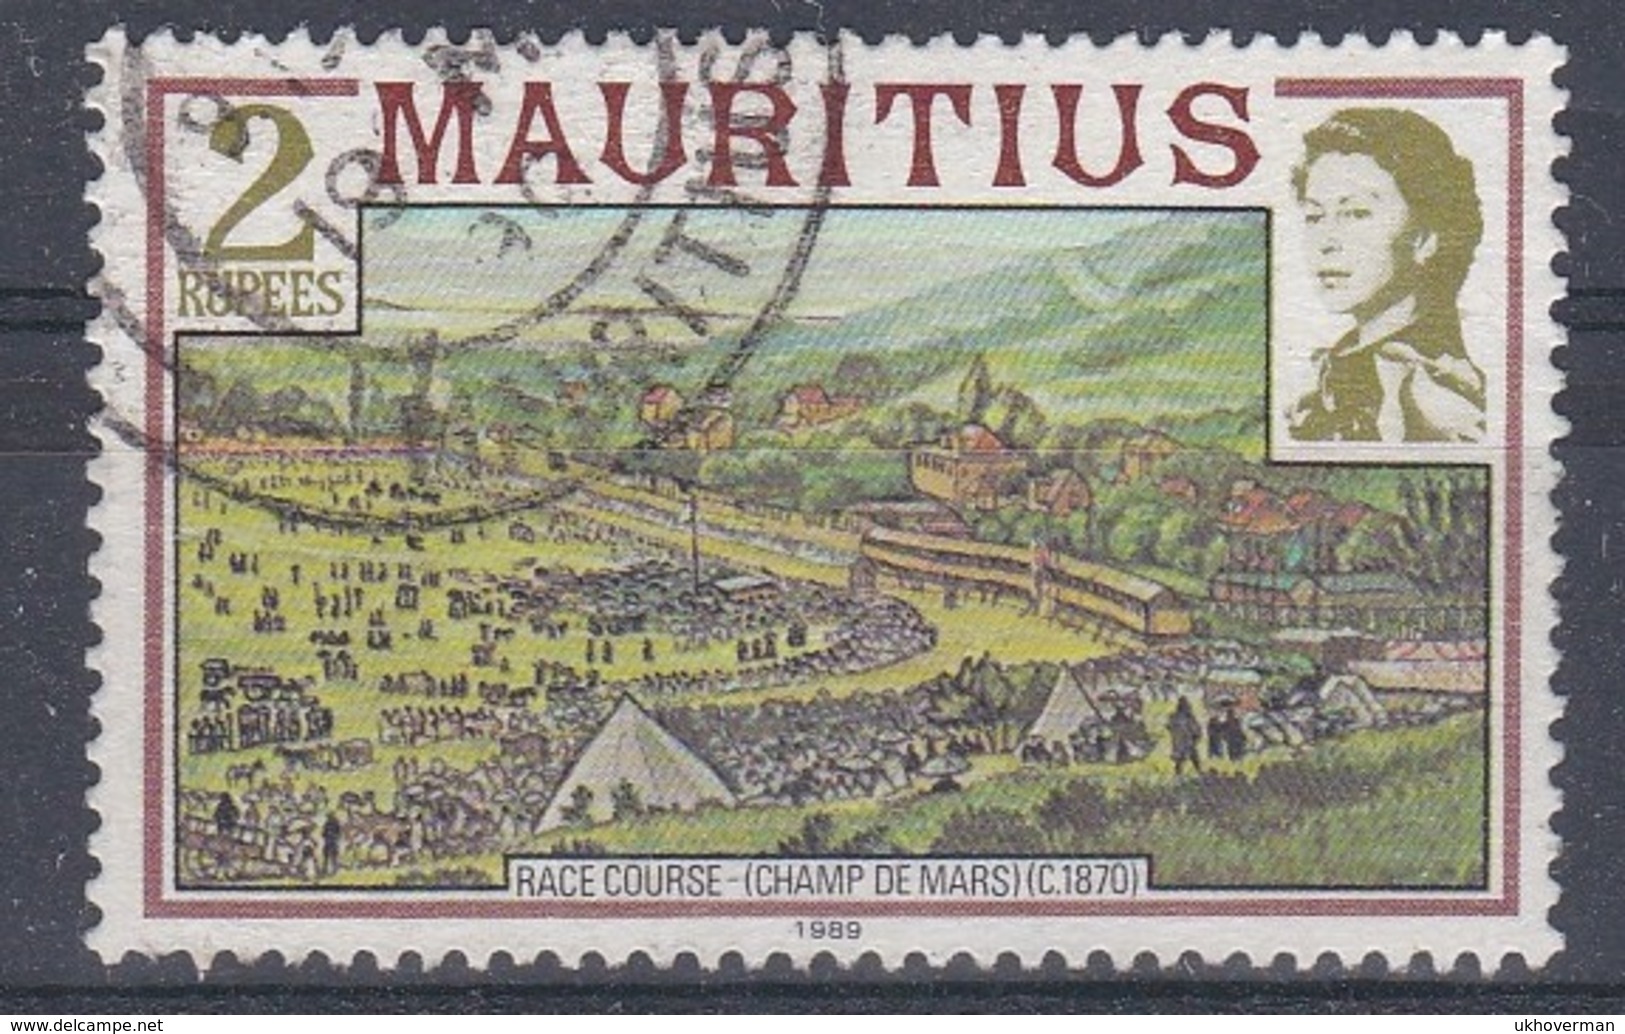 MAURITIUS > IMPRINT > 1989 - Mauritius (1968-...)